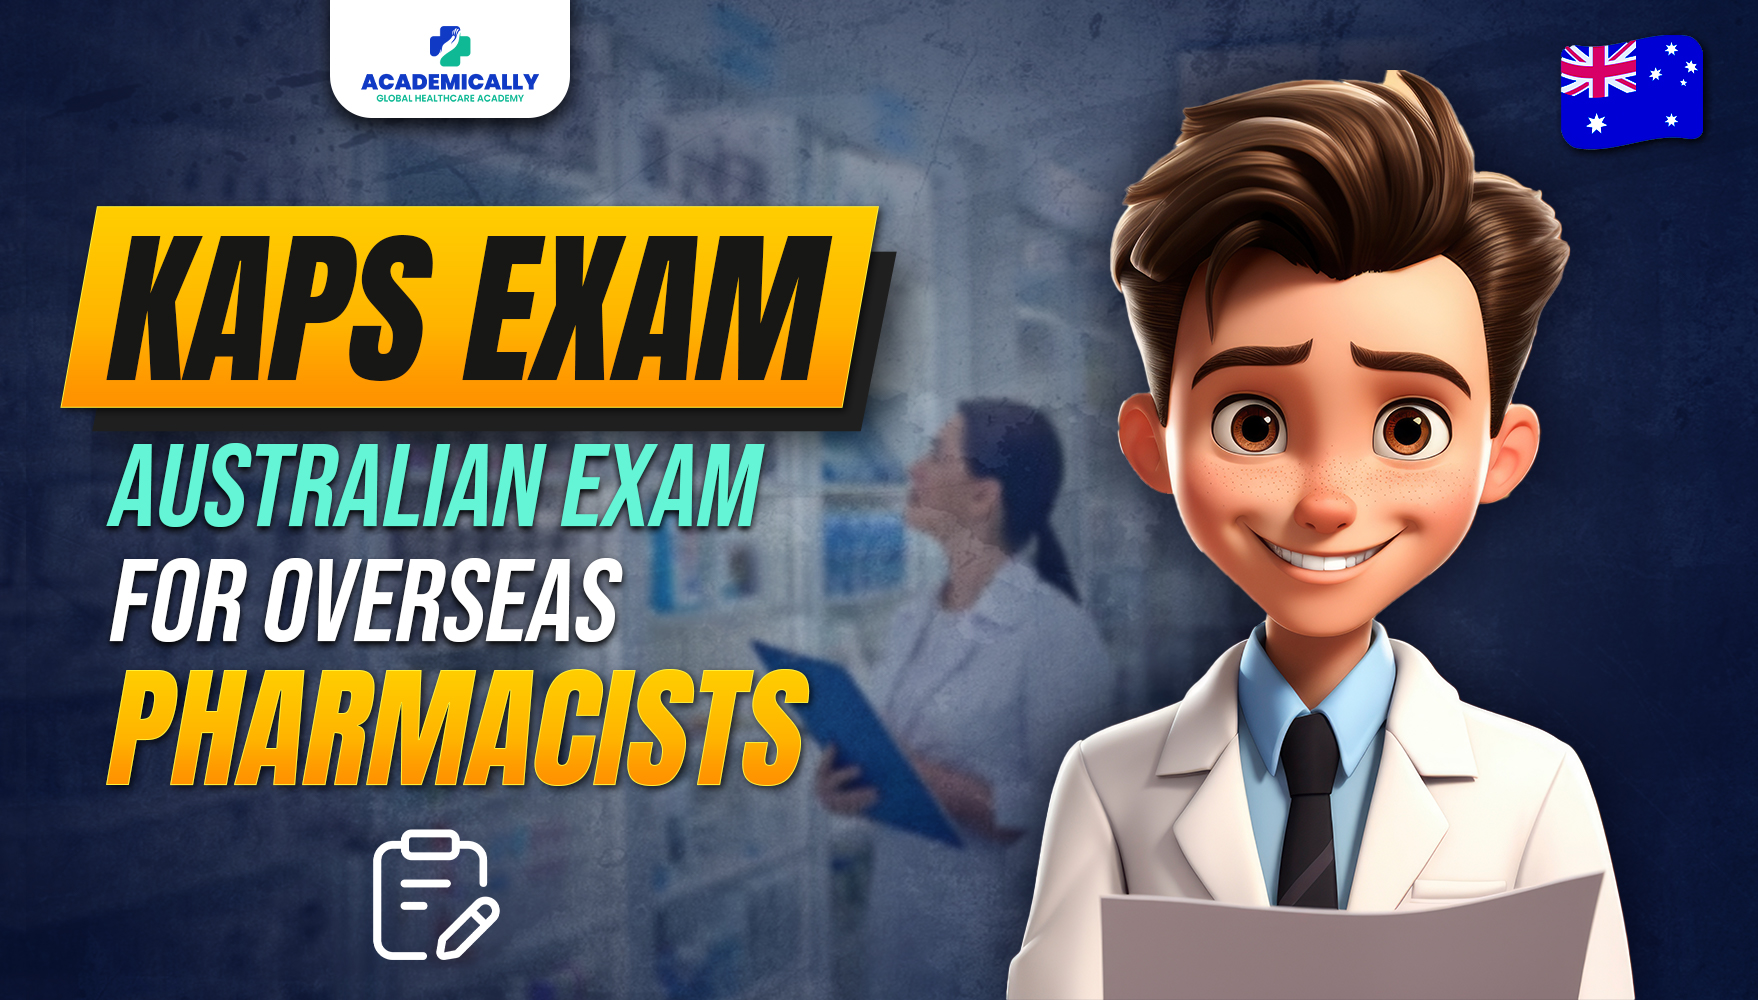 Australian Exam for Pharmacists